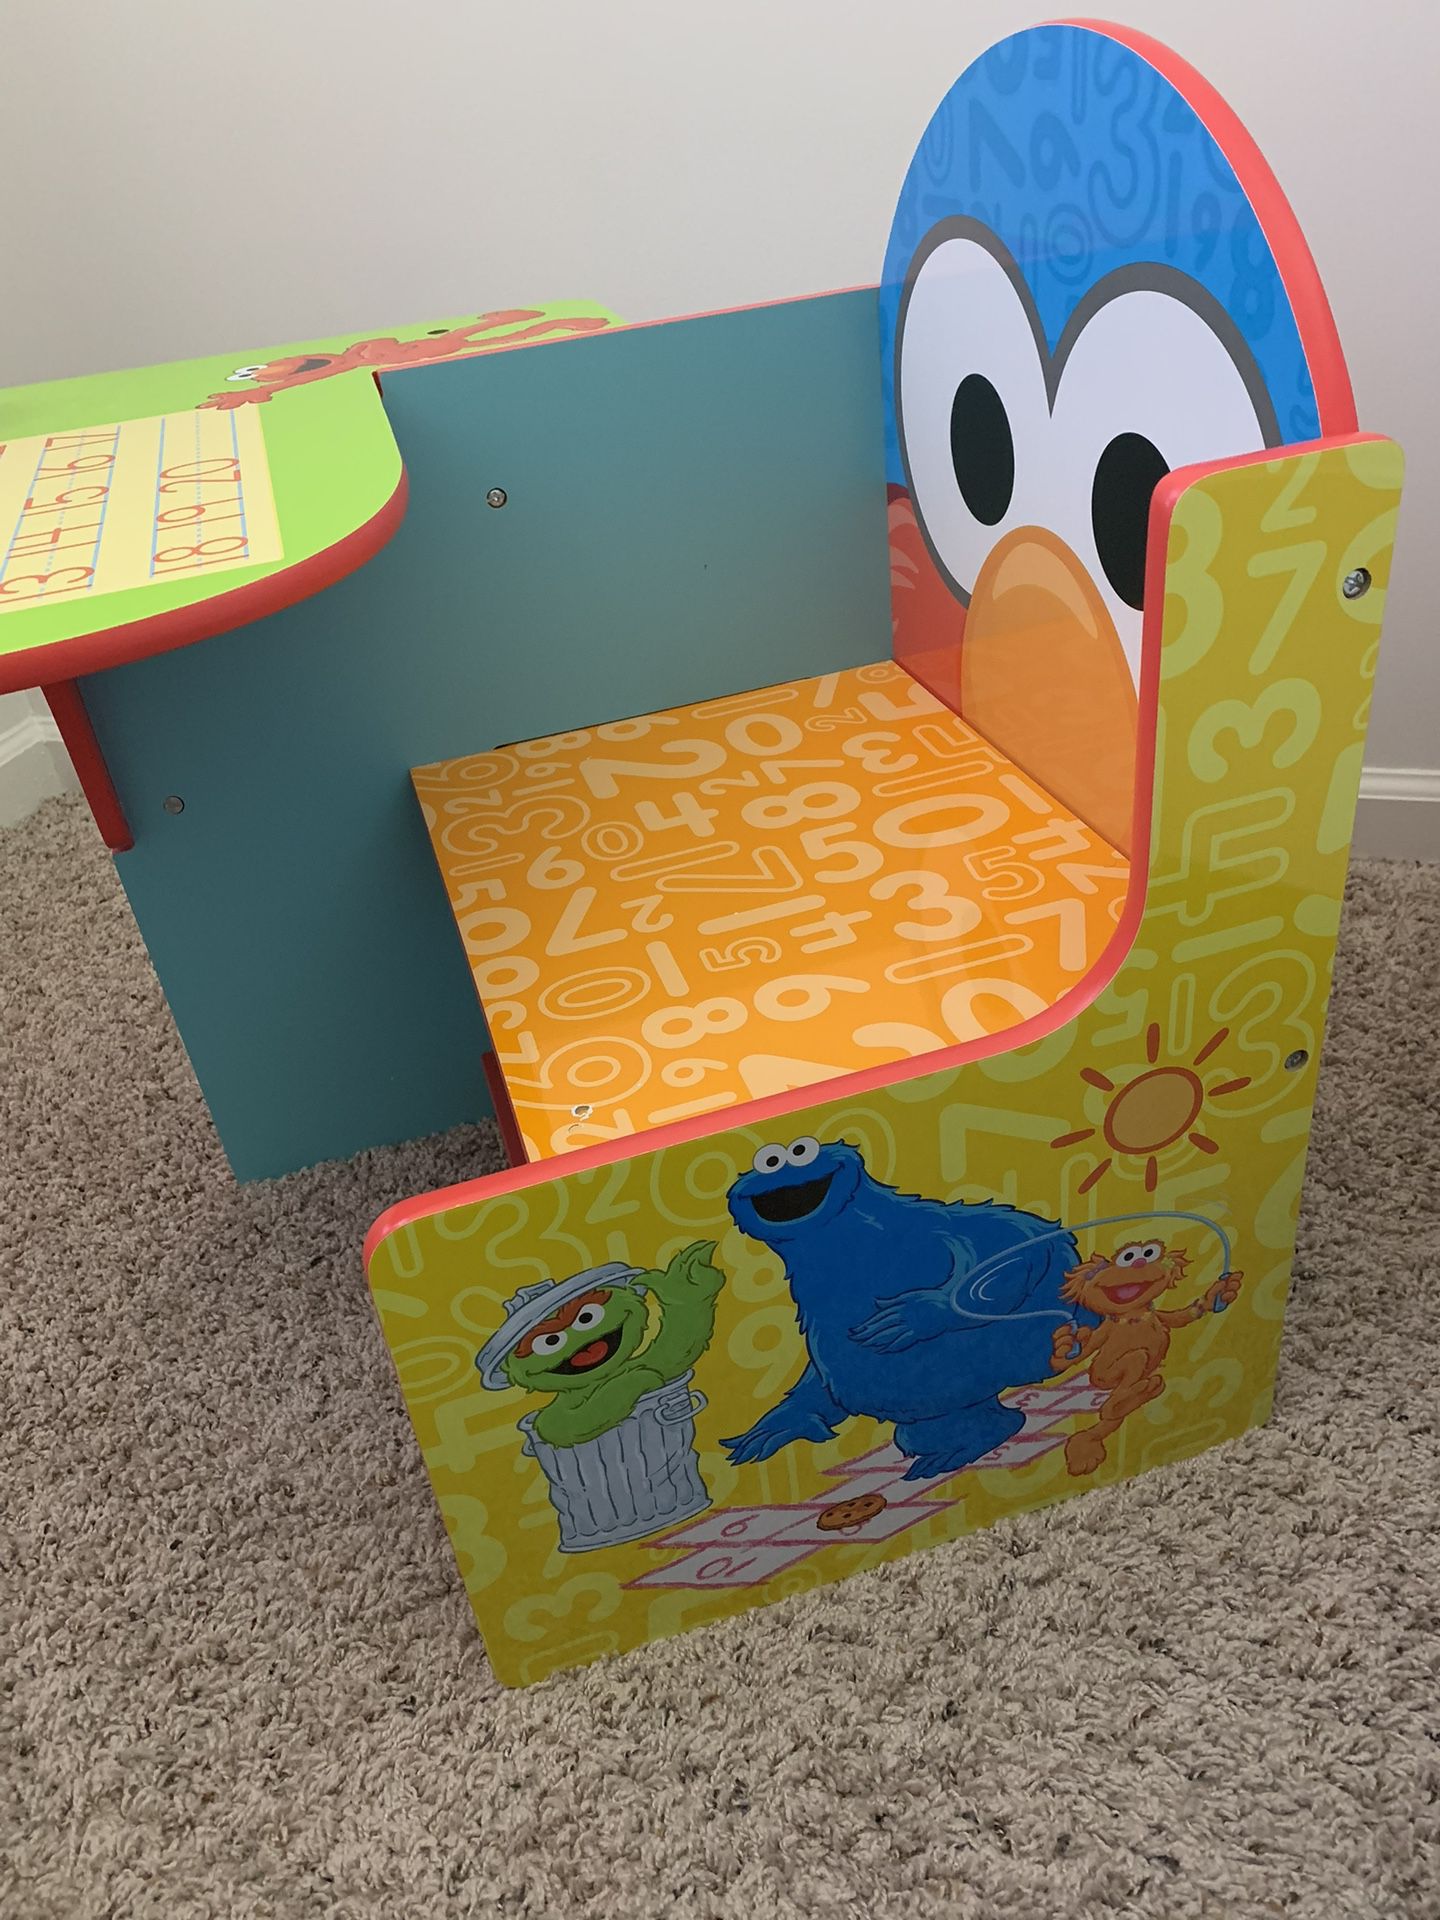 Elmo Children’s Chair Desk with Storage Bin